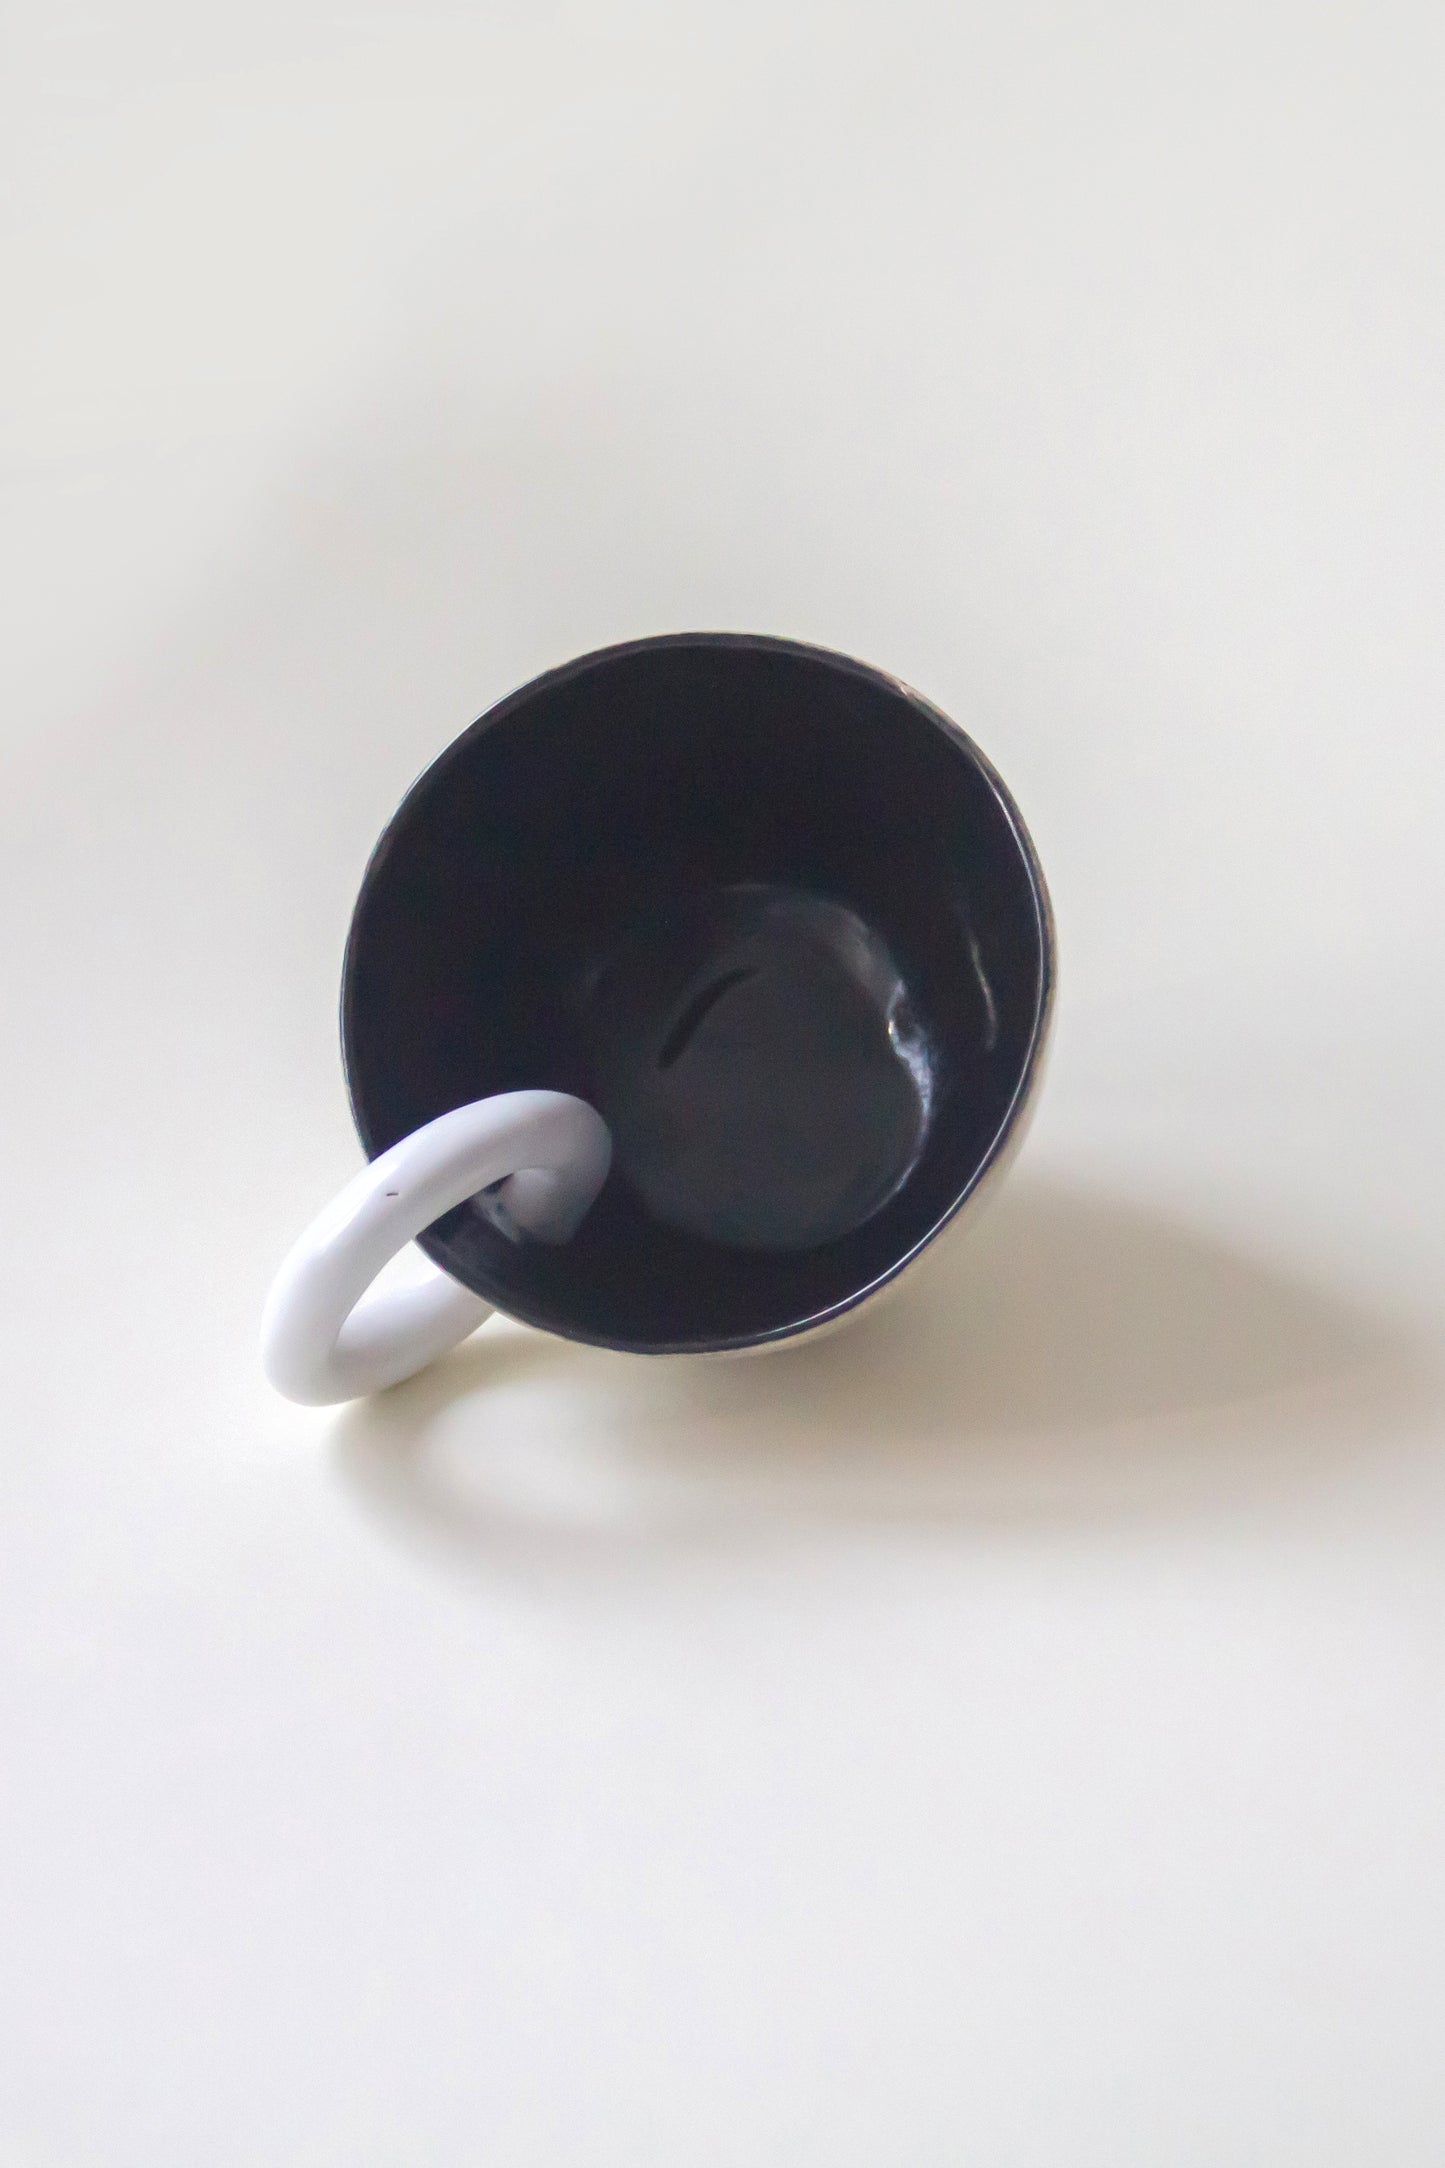 Kubek ceramiczny w kolorze czarno-białym oraz efektem krakle